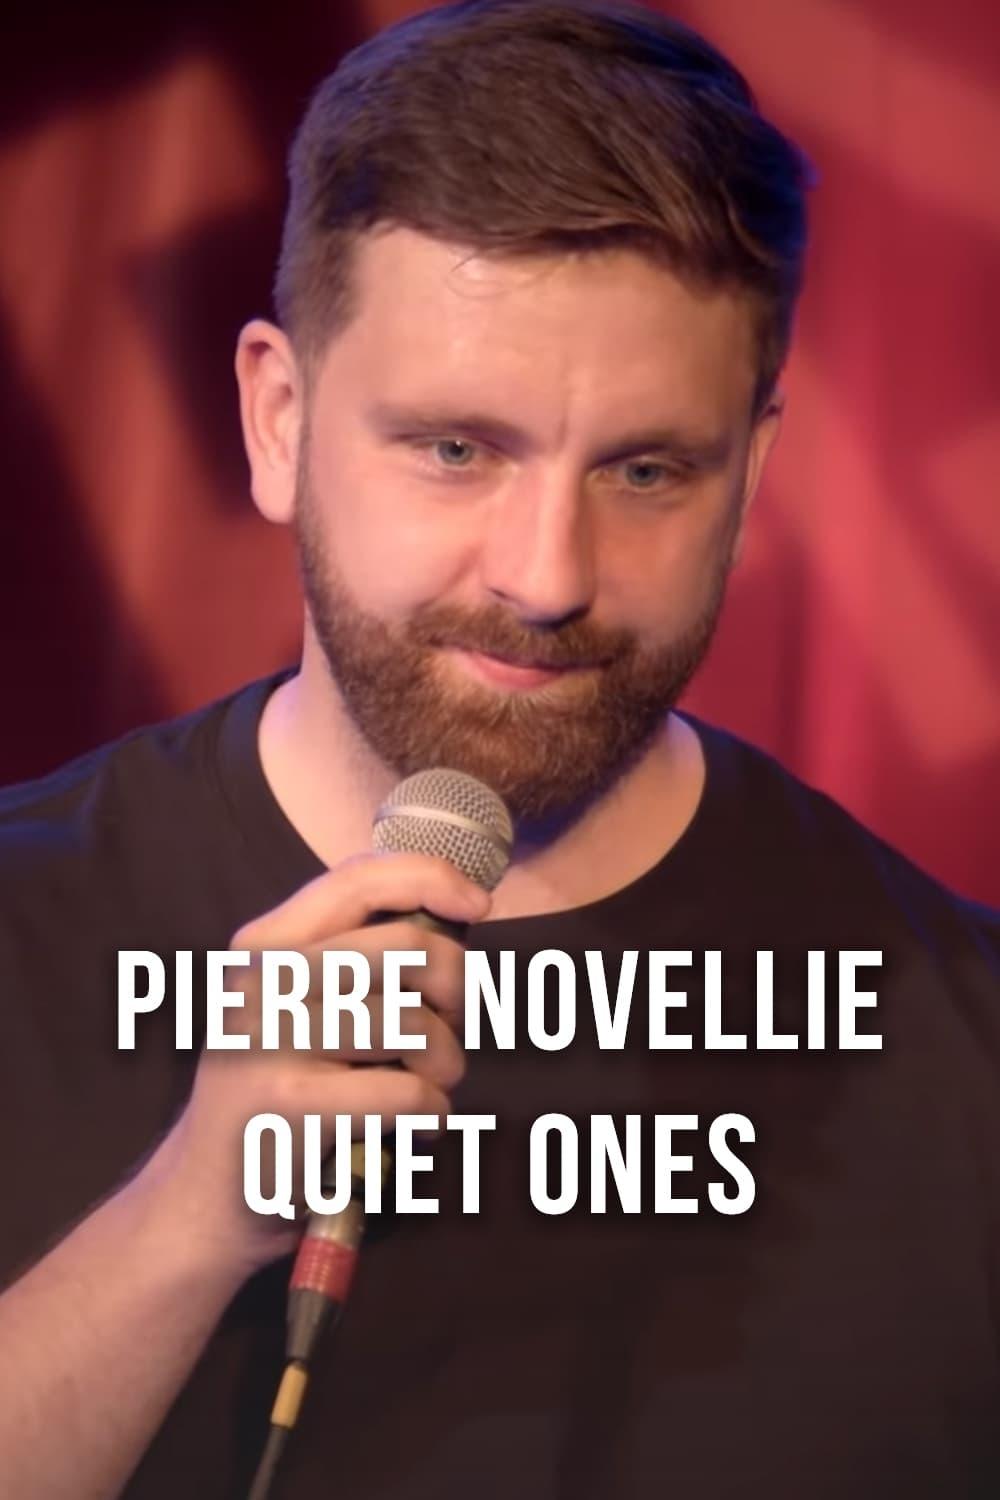 Pierre Novellie: Quiet Ones poster